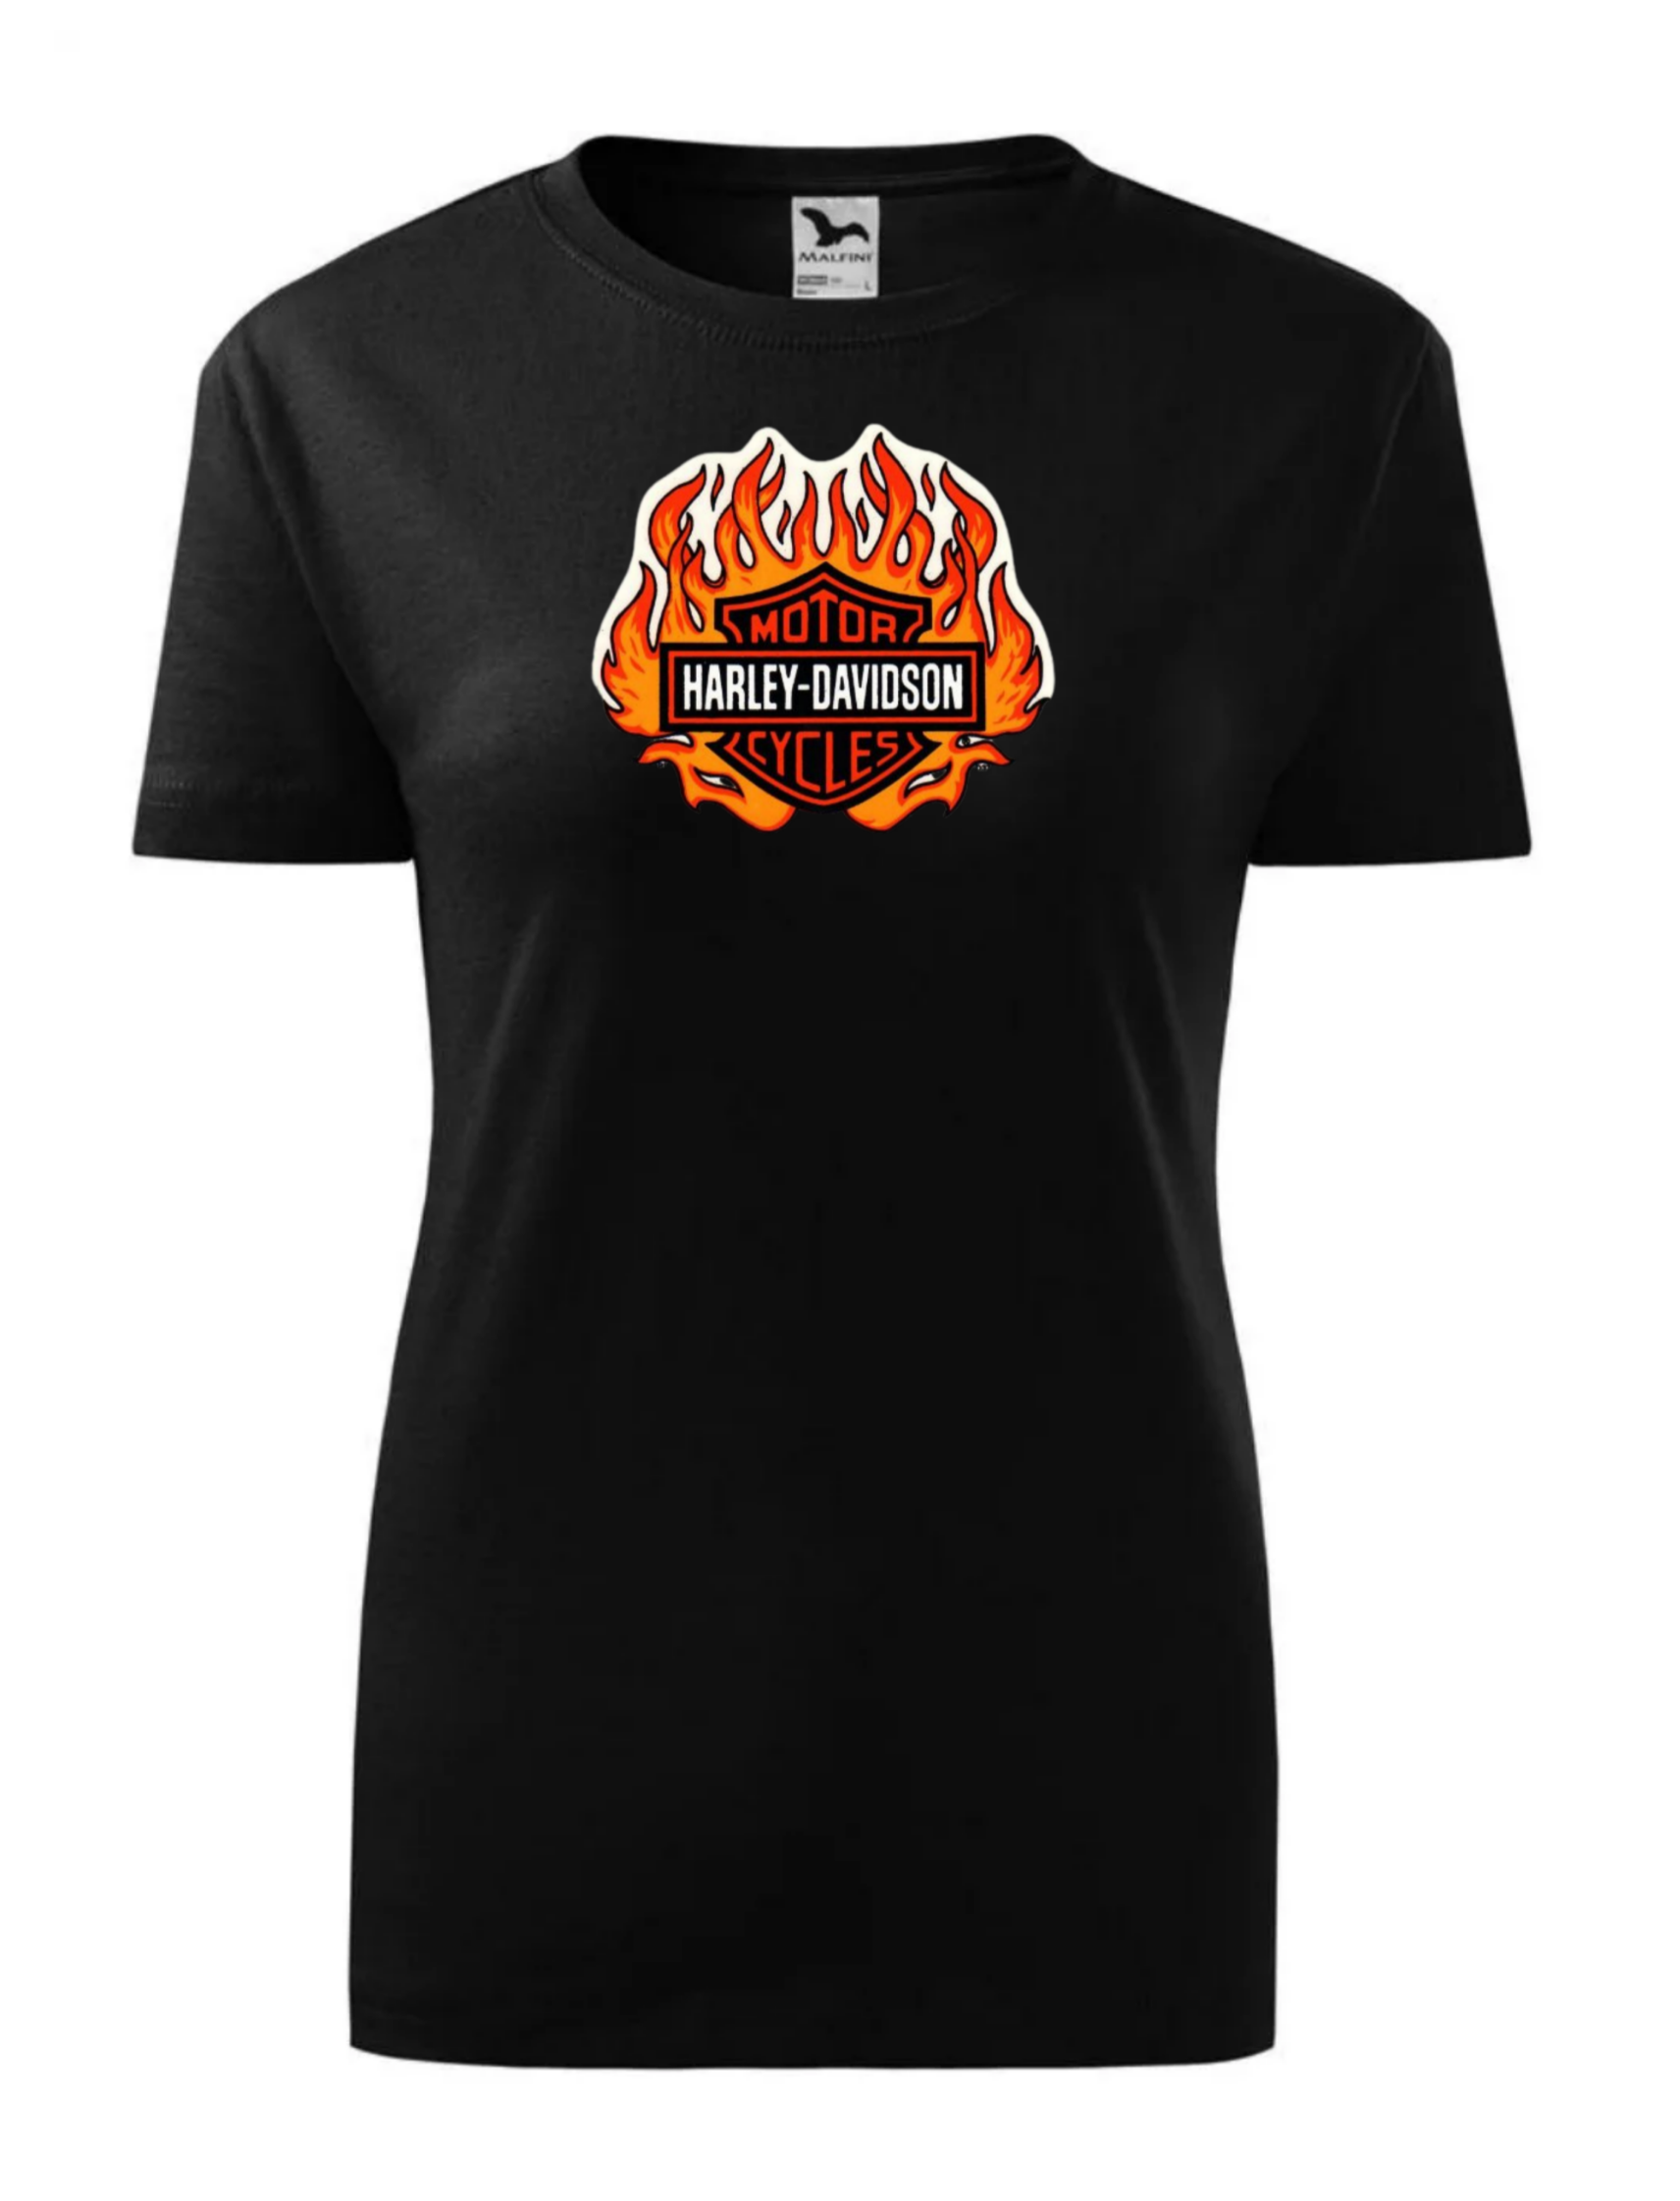 Dámské tričko s potiskem značky Harley Davidson 26